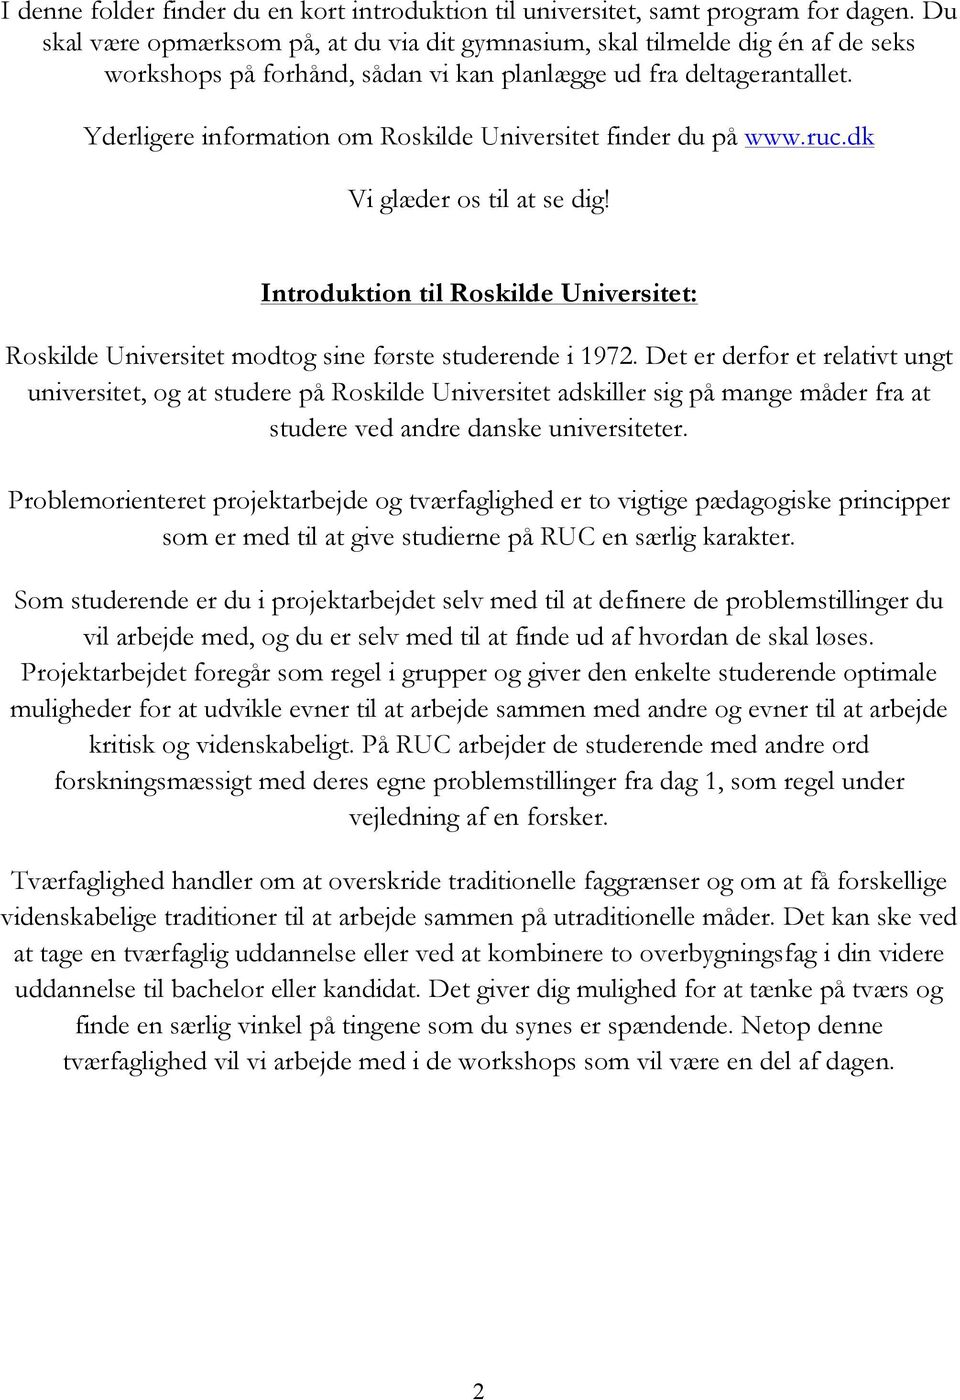 Yderligere information om Roskilde Universitet finder du på www.ruc.dk Vi glæder os til at se dig! Introduktion til Roskilde Universitet: Roskilde Universitet modtog sine første studerende i 1972.